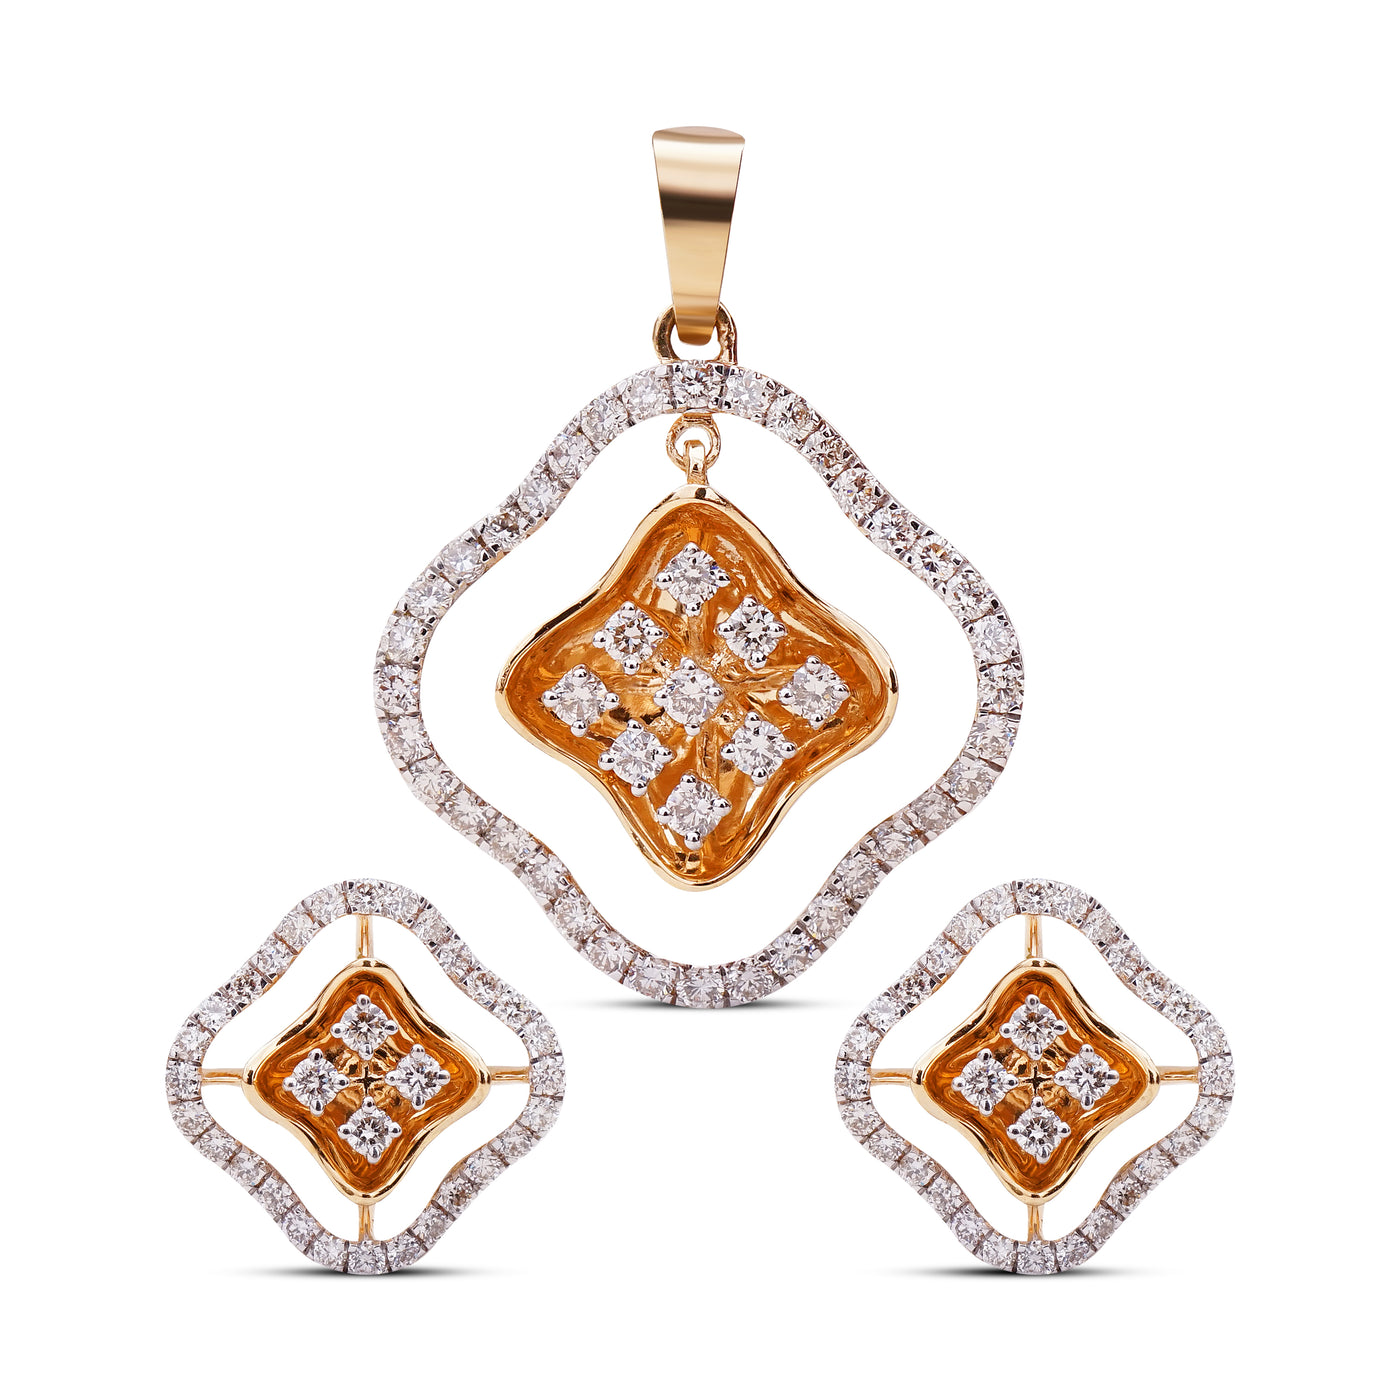 The Square Grace Diamond Pendant Set